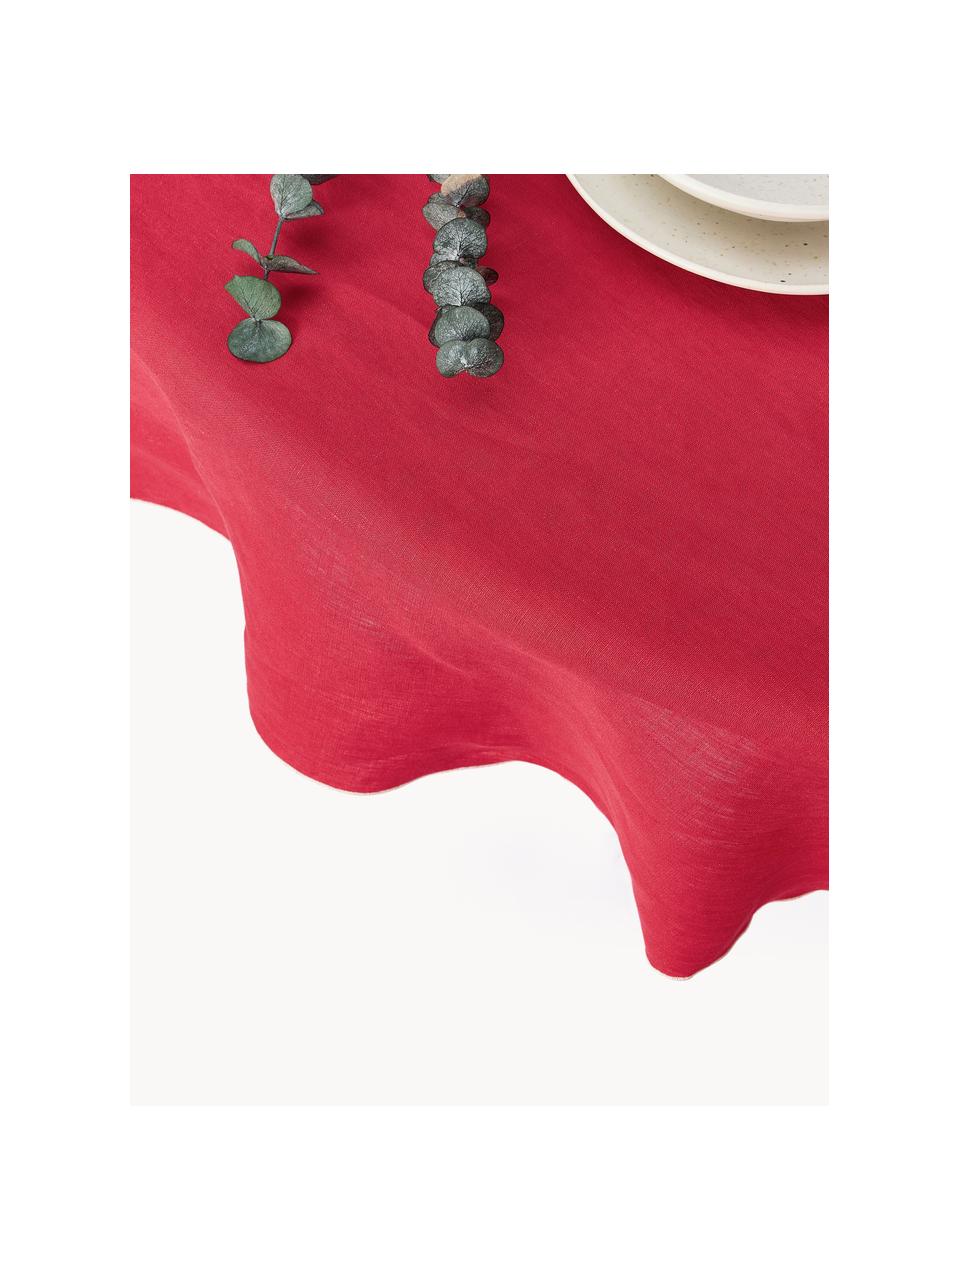 Runde Leinen-Tischdecke Kennedy mit Umkettelung, 100 % gewaschenes Leinen

Leinen ist eine Naturfaser, welche sich durch Atmungsaktivität, Strapazierfähigkeit und Weichheit auszeichnet.

Das in diesem Produkt verwendete Material ist schadstoffgeprüft und zertifiziert nach STANDARD 100 by OEKO-TEX®, 6760CIT, CITEVE., Rot, Weiß, 4-6 Personen (Ø 180 cm)